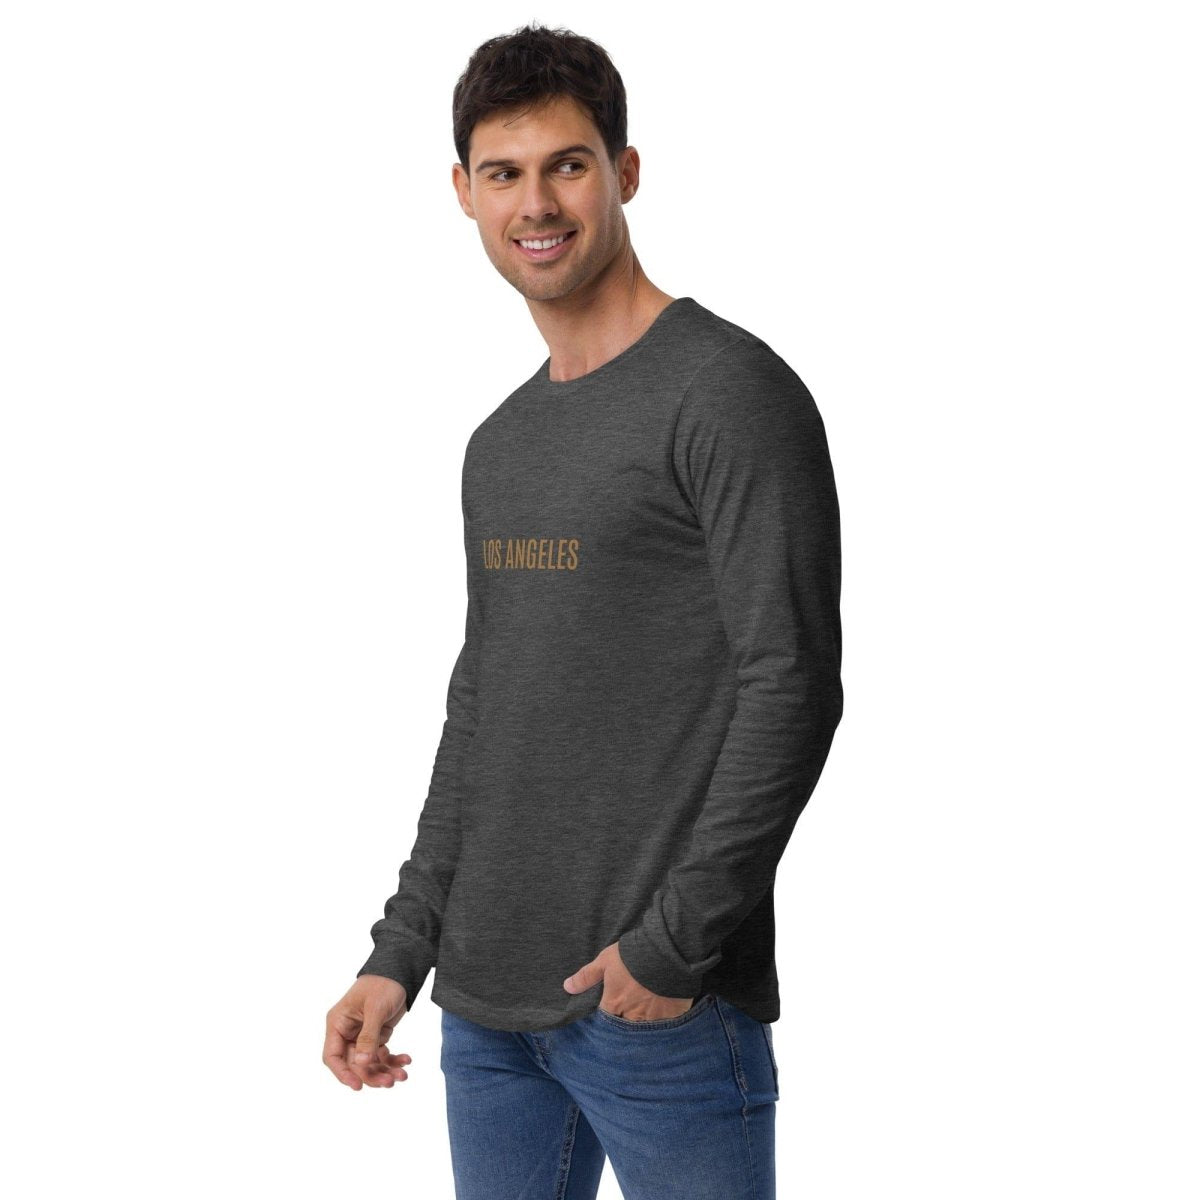 Herren Sweatshirt XS-2XL - Online kaufen im Sale - Große Auswahl ➤  Günstige Preise ▻"Eine exklusive Auswahl an Produkten